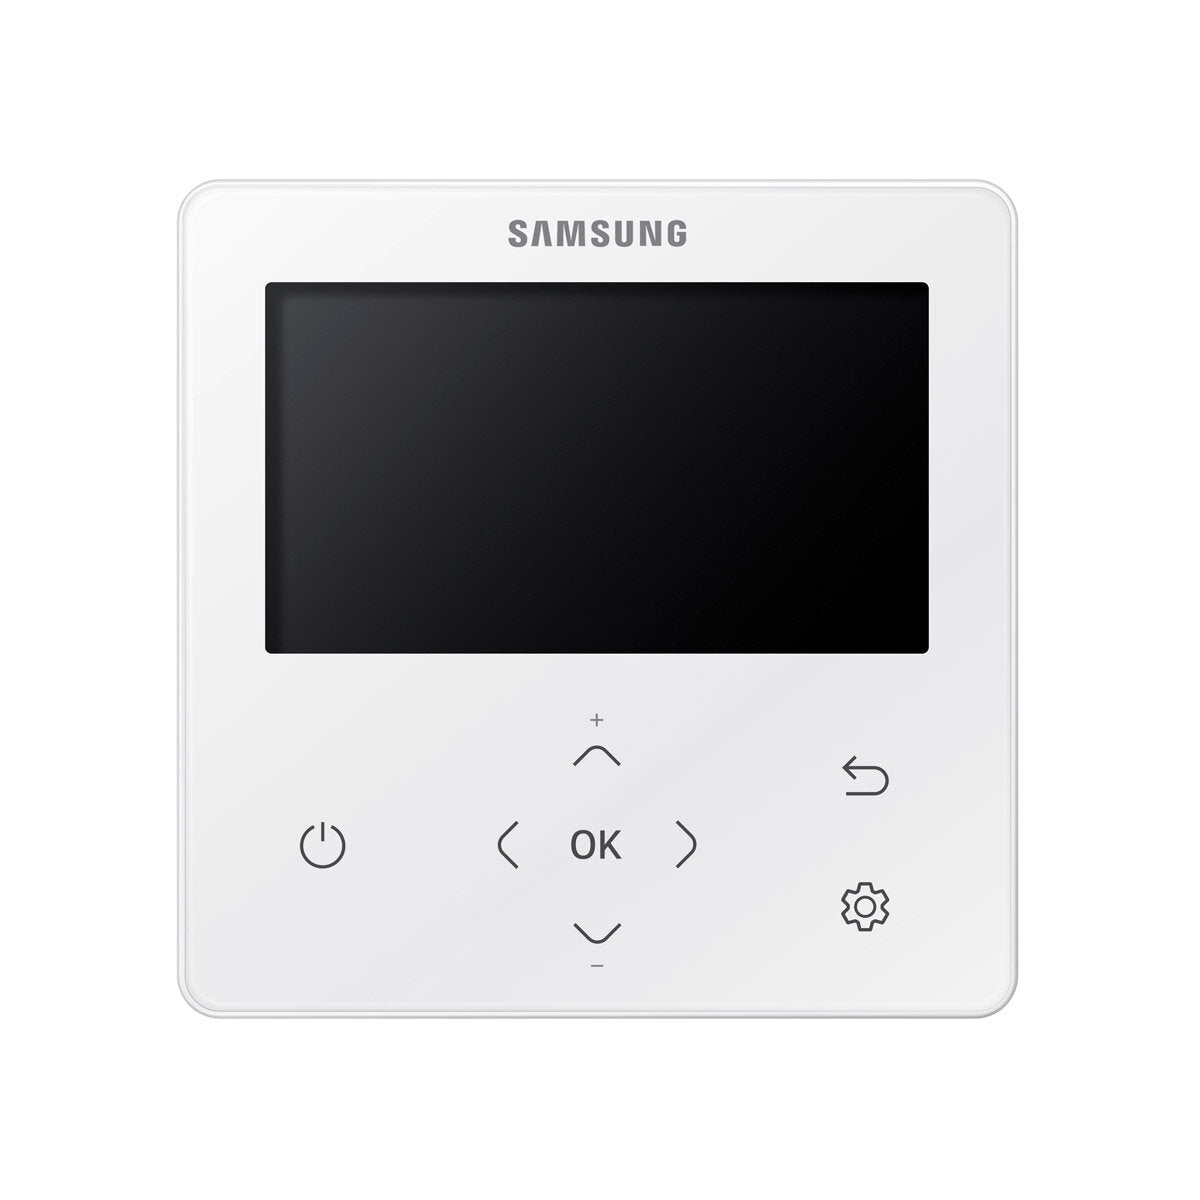 Samsung Climatiseur Cassette WindFree 1 Way penta split 9000 + 9000 + 9000 + 9000 + 9000 BTU inverter A++ unité extérieure 10,0 kW